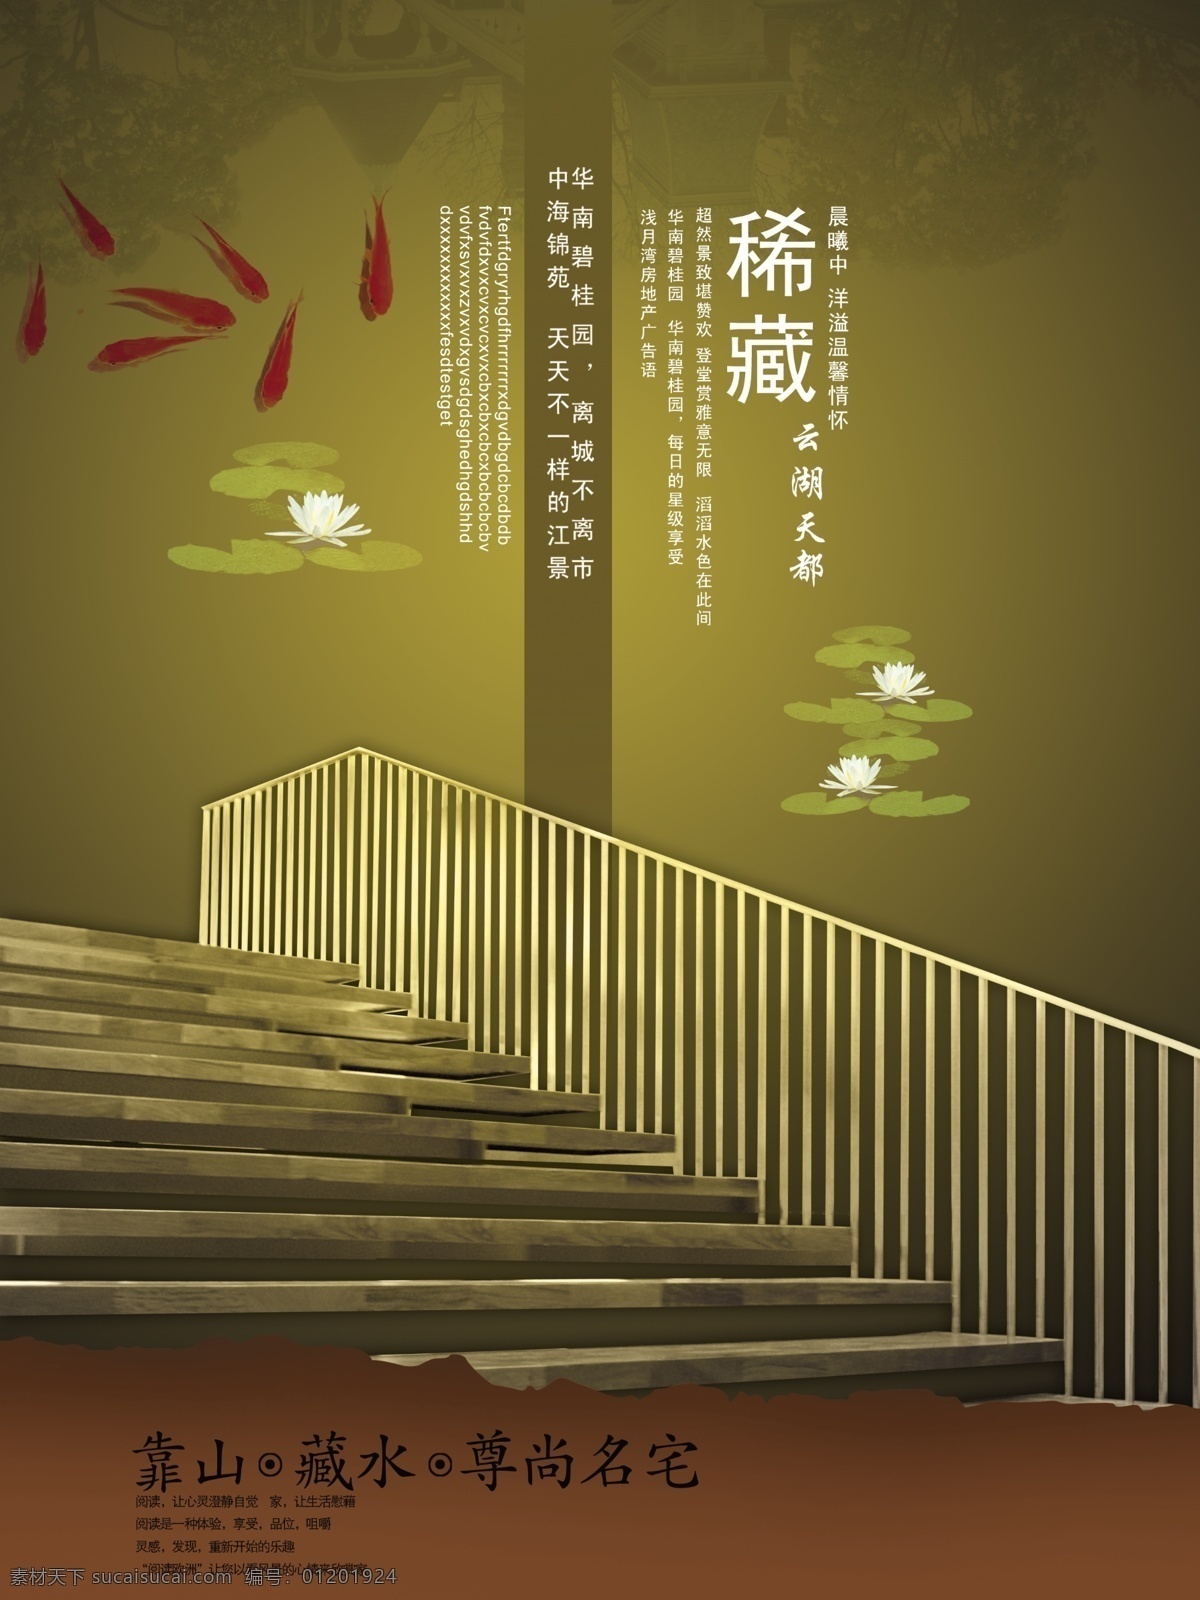 中国 风 古典 大气 海报 中国风 绿色 荷花 荷叶 金鱼 楼梯 扶栏 黑色